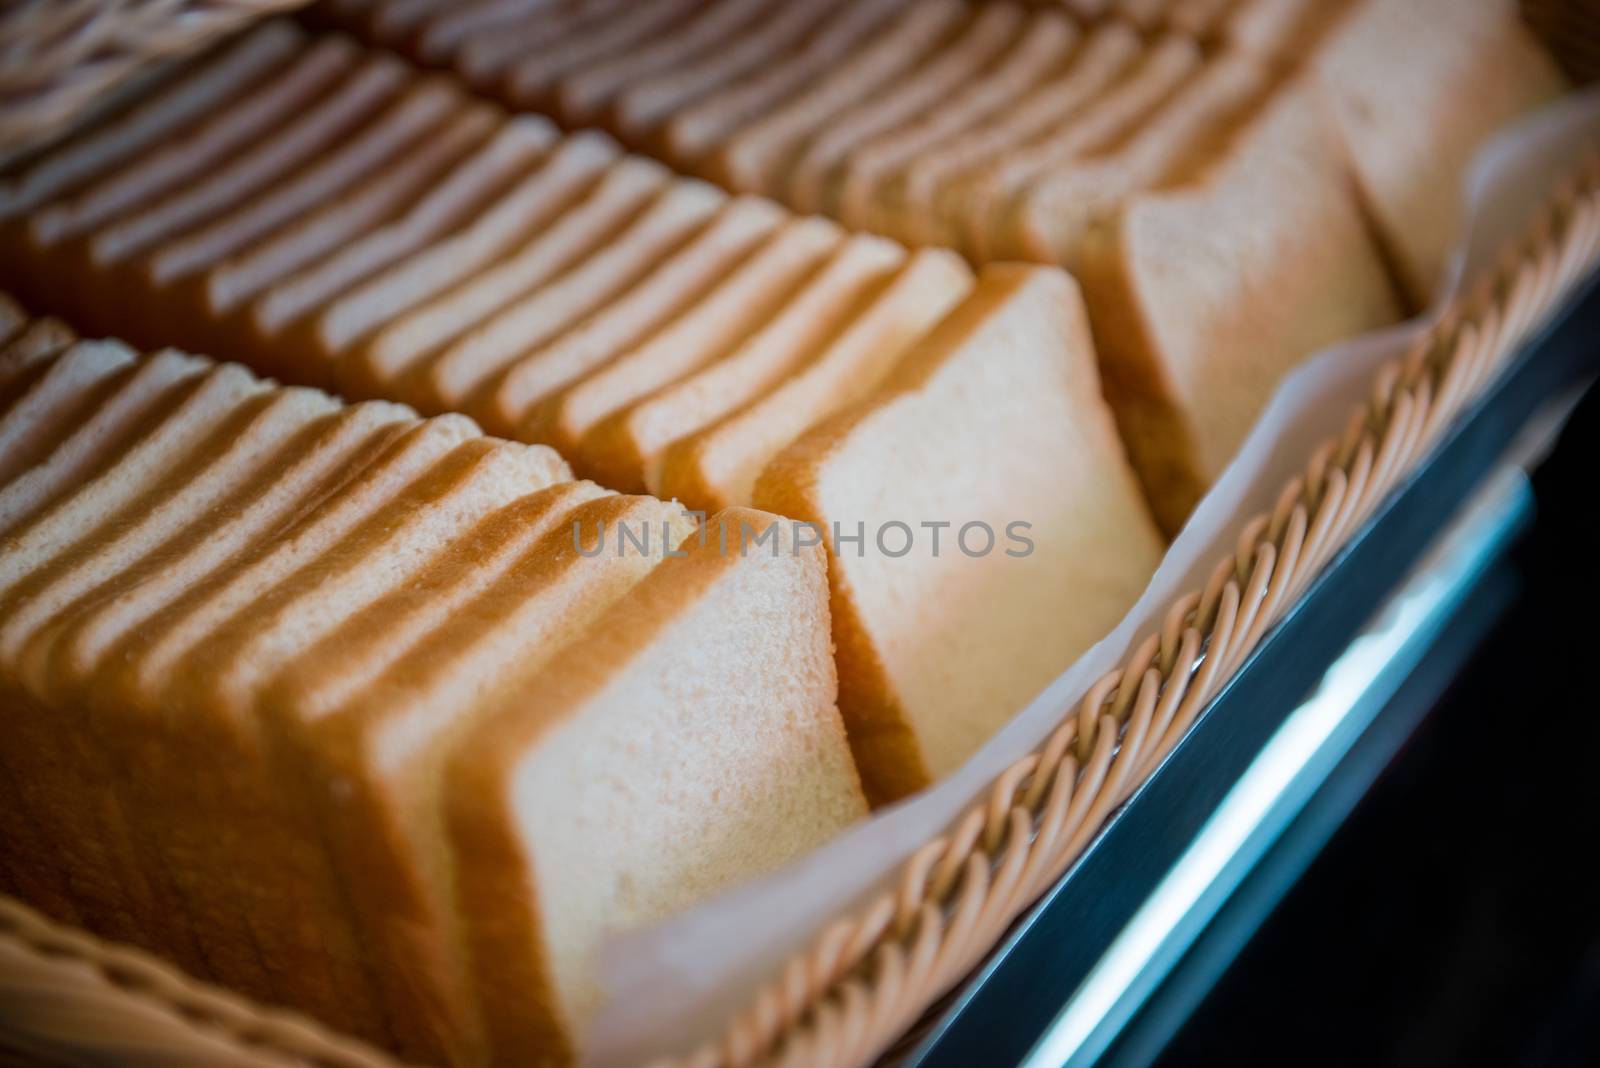 row of sliced bread in basket by antpkr